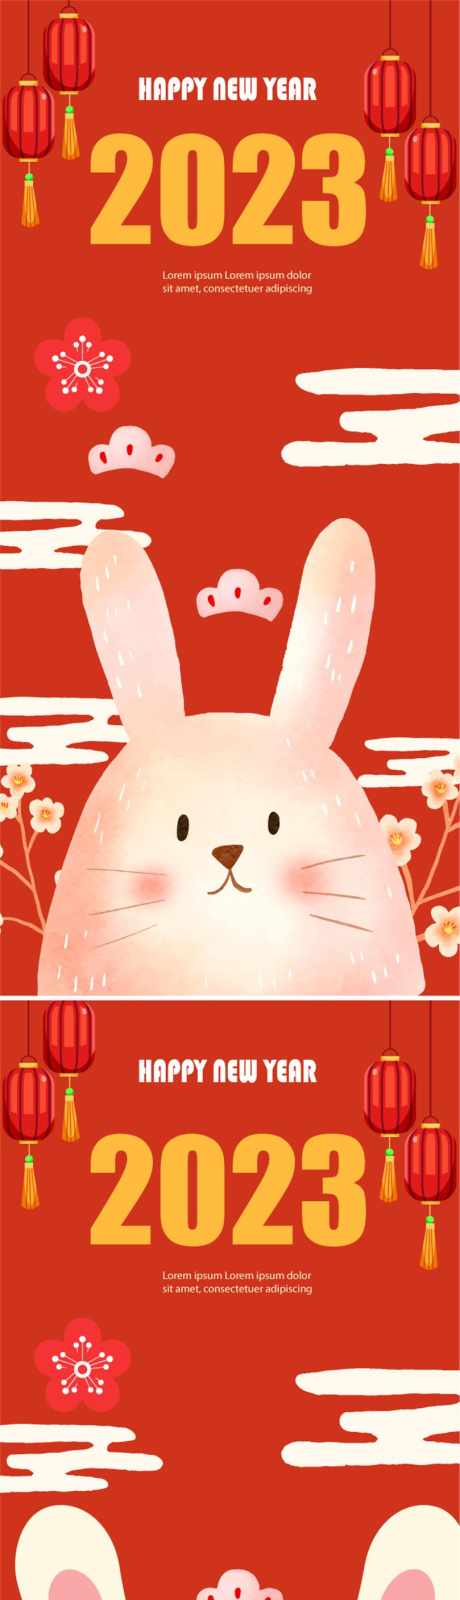 2023新年兔年海报_源文件下载_AI格式_809X3510像素-插画,兔子,灯笼,除夕,春节,兔年,新年,海报-作品编号:2023102113242309-志设-zs9.com